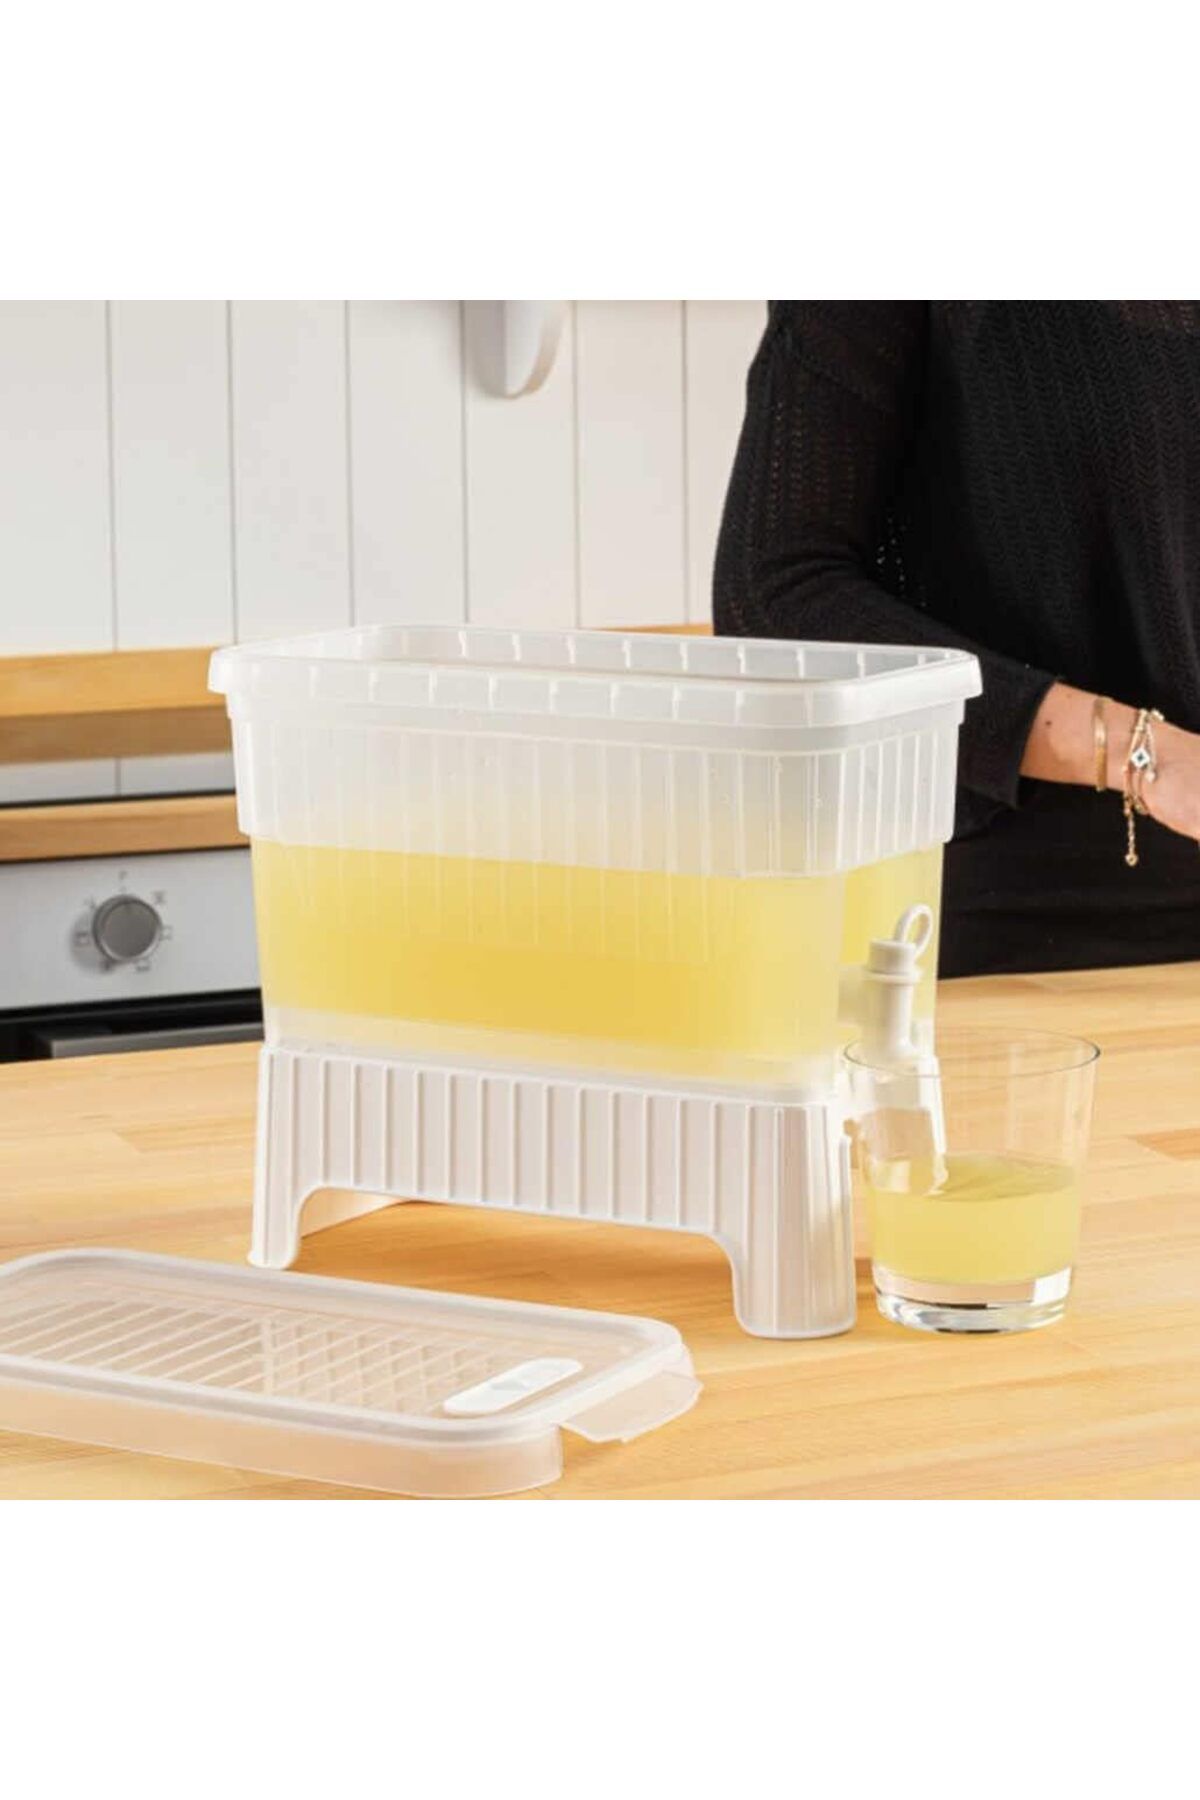 Store Buzdolabı İçi Musluklu Ayaklı Su -Limonata - İçecek Sebili Piknik Bidonu 4 LT